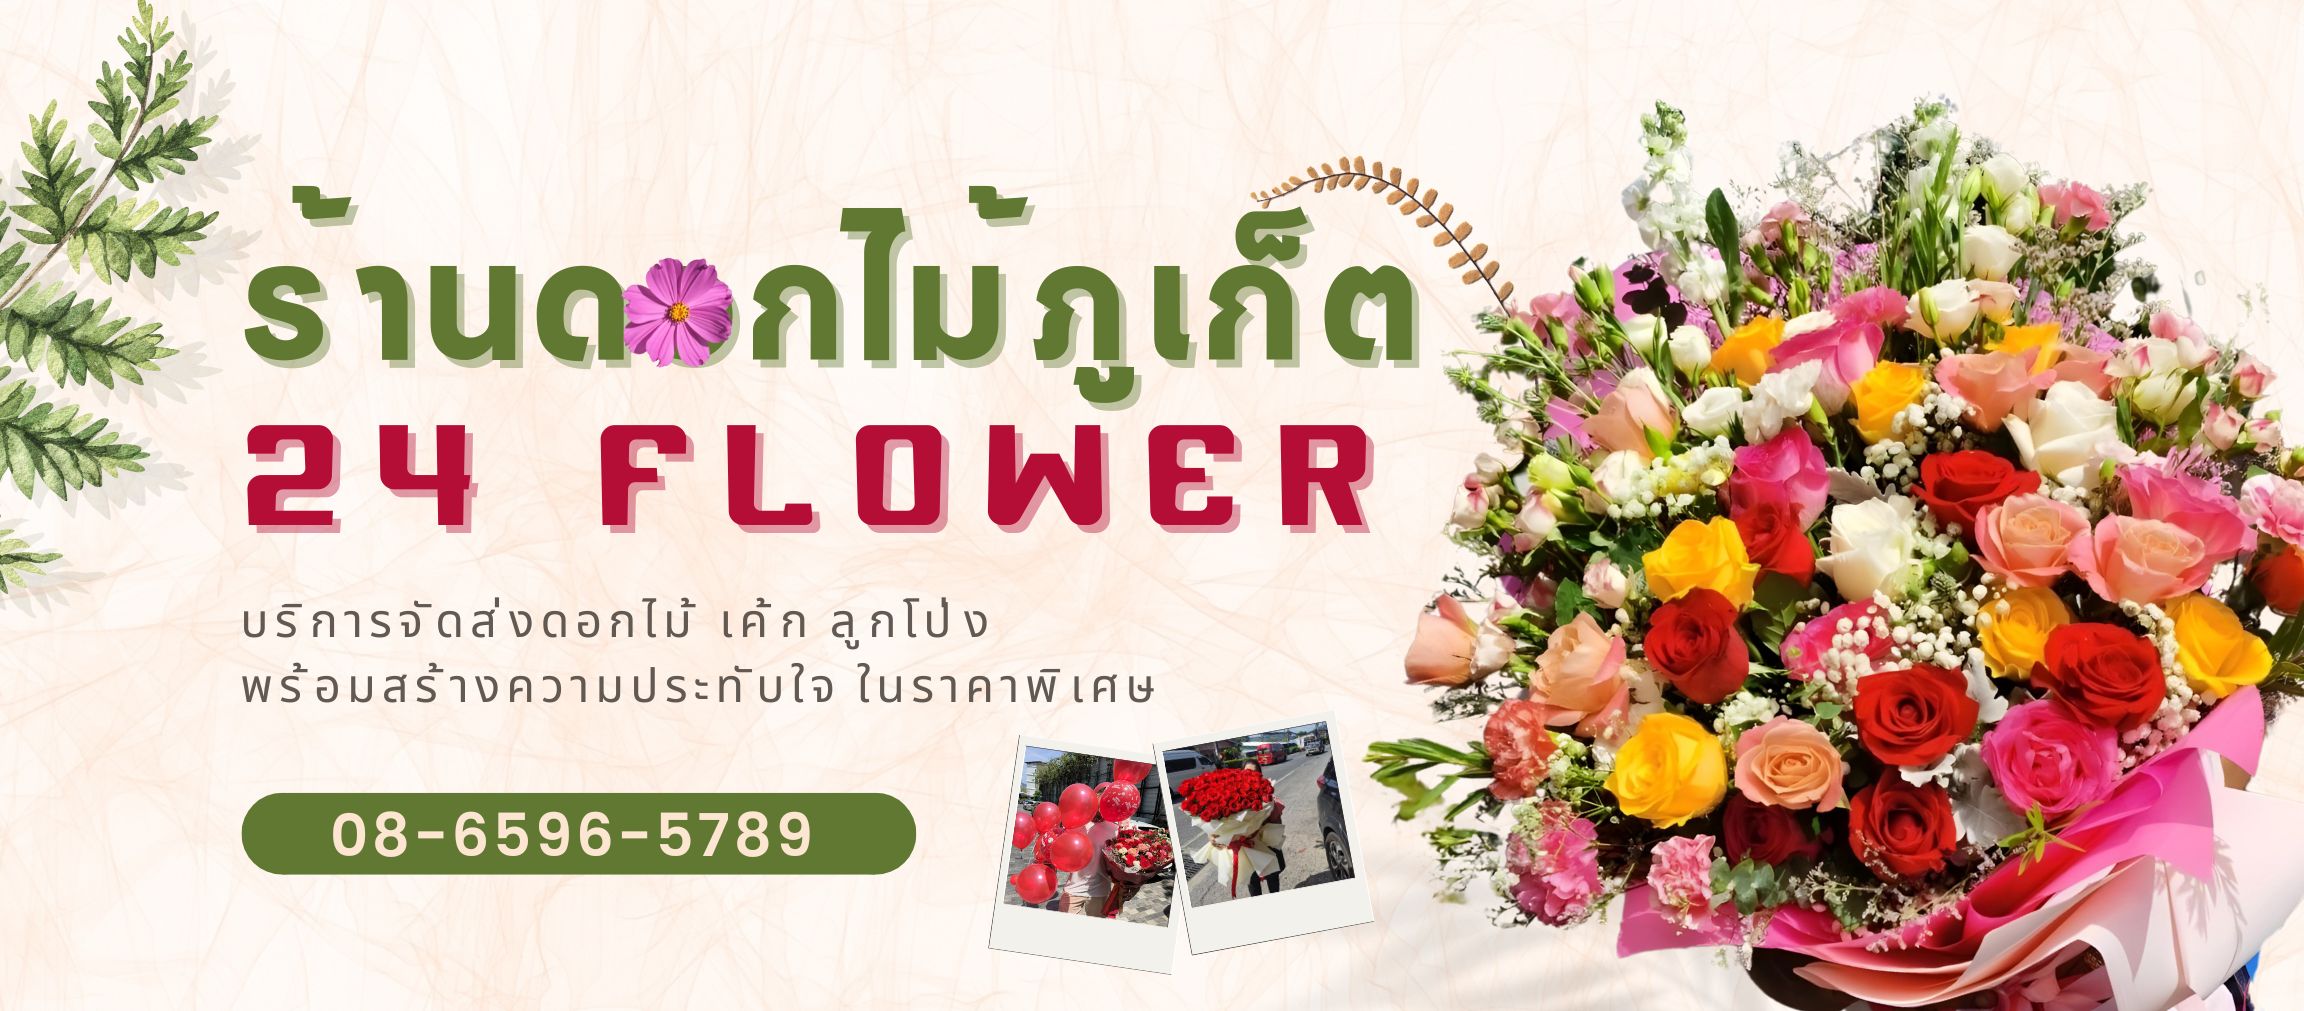 ร้านดอกไม้ภูเก็ต 24 Flower จัดดอกไม้